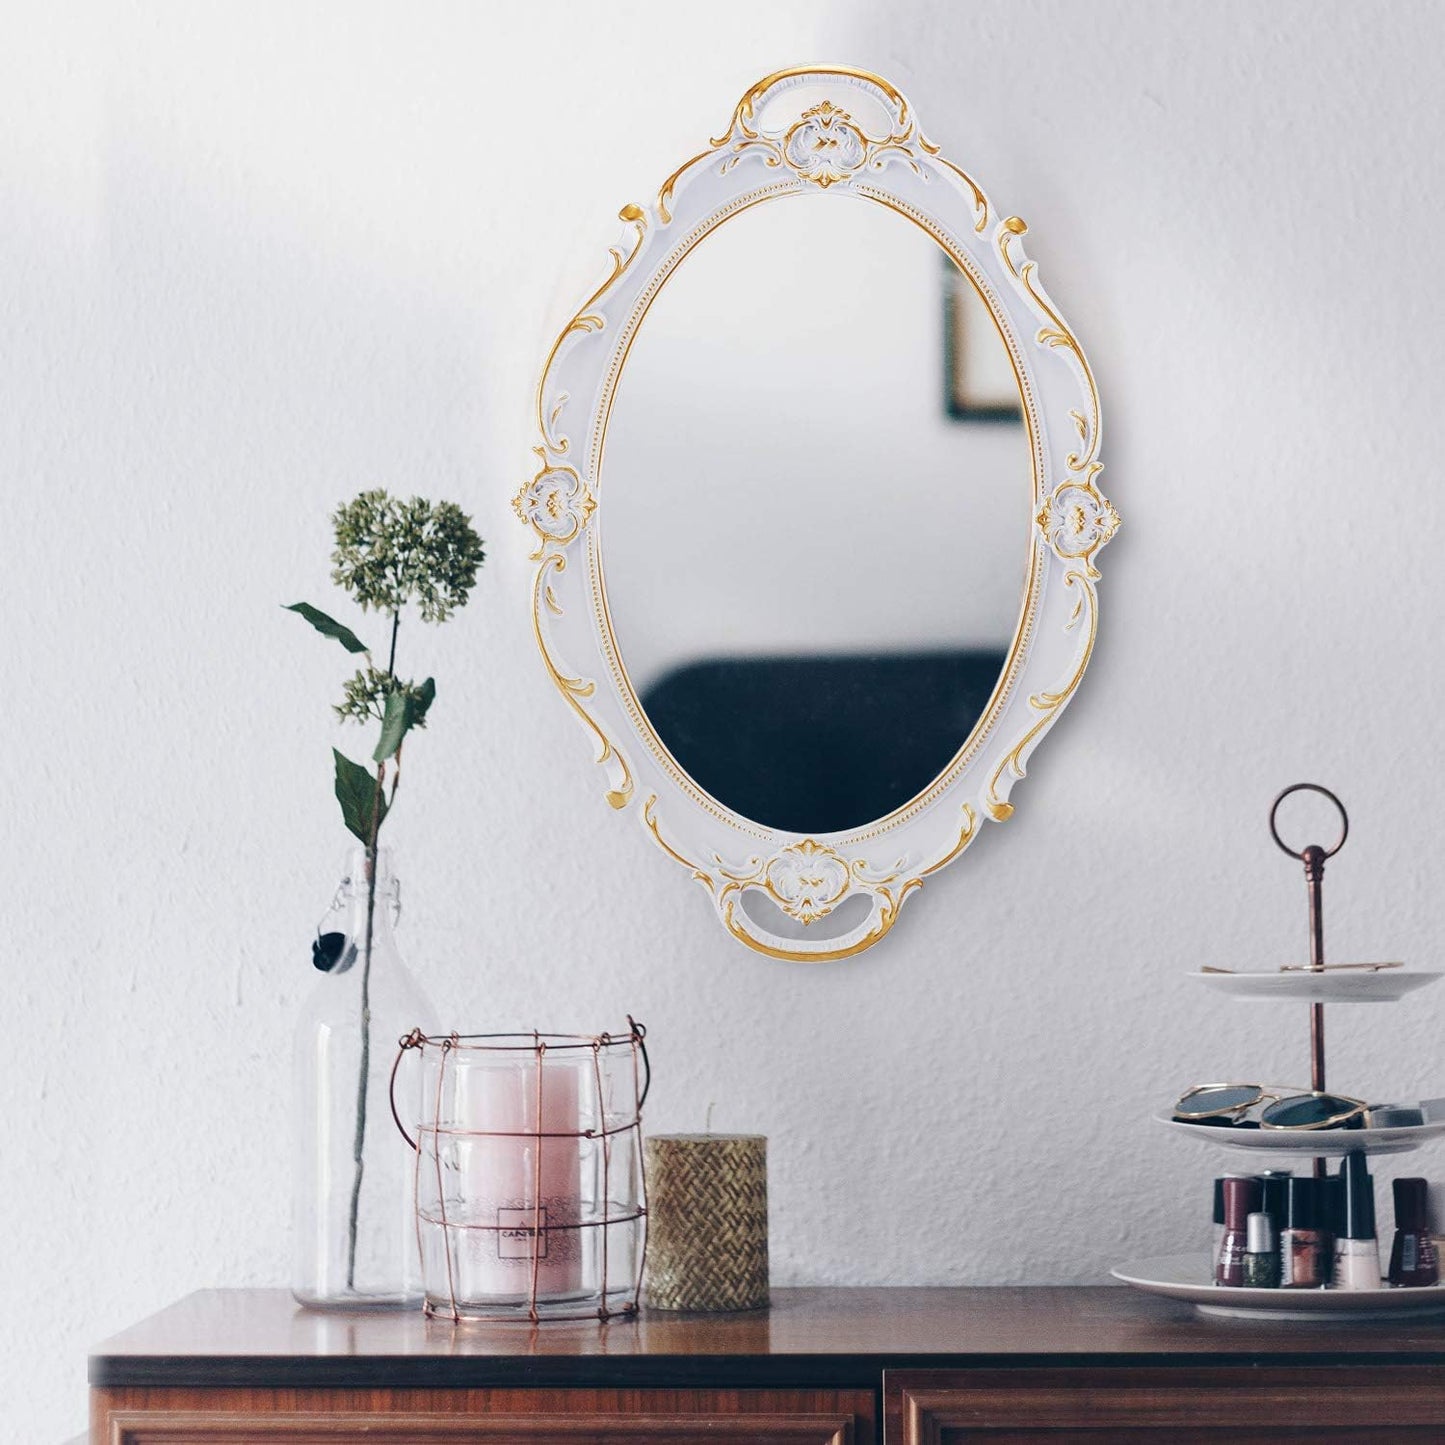 OMIRO Espejo de pared decorativo, espejos colgantes tallados vintage para decoración de dormitorio, sala de estar, tocador, oro antiguo ovalado de 10 pulgadas de ancho x 15 pulgadas de largo